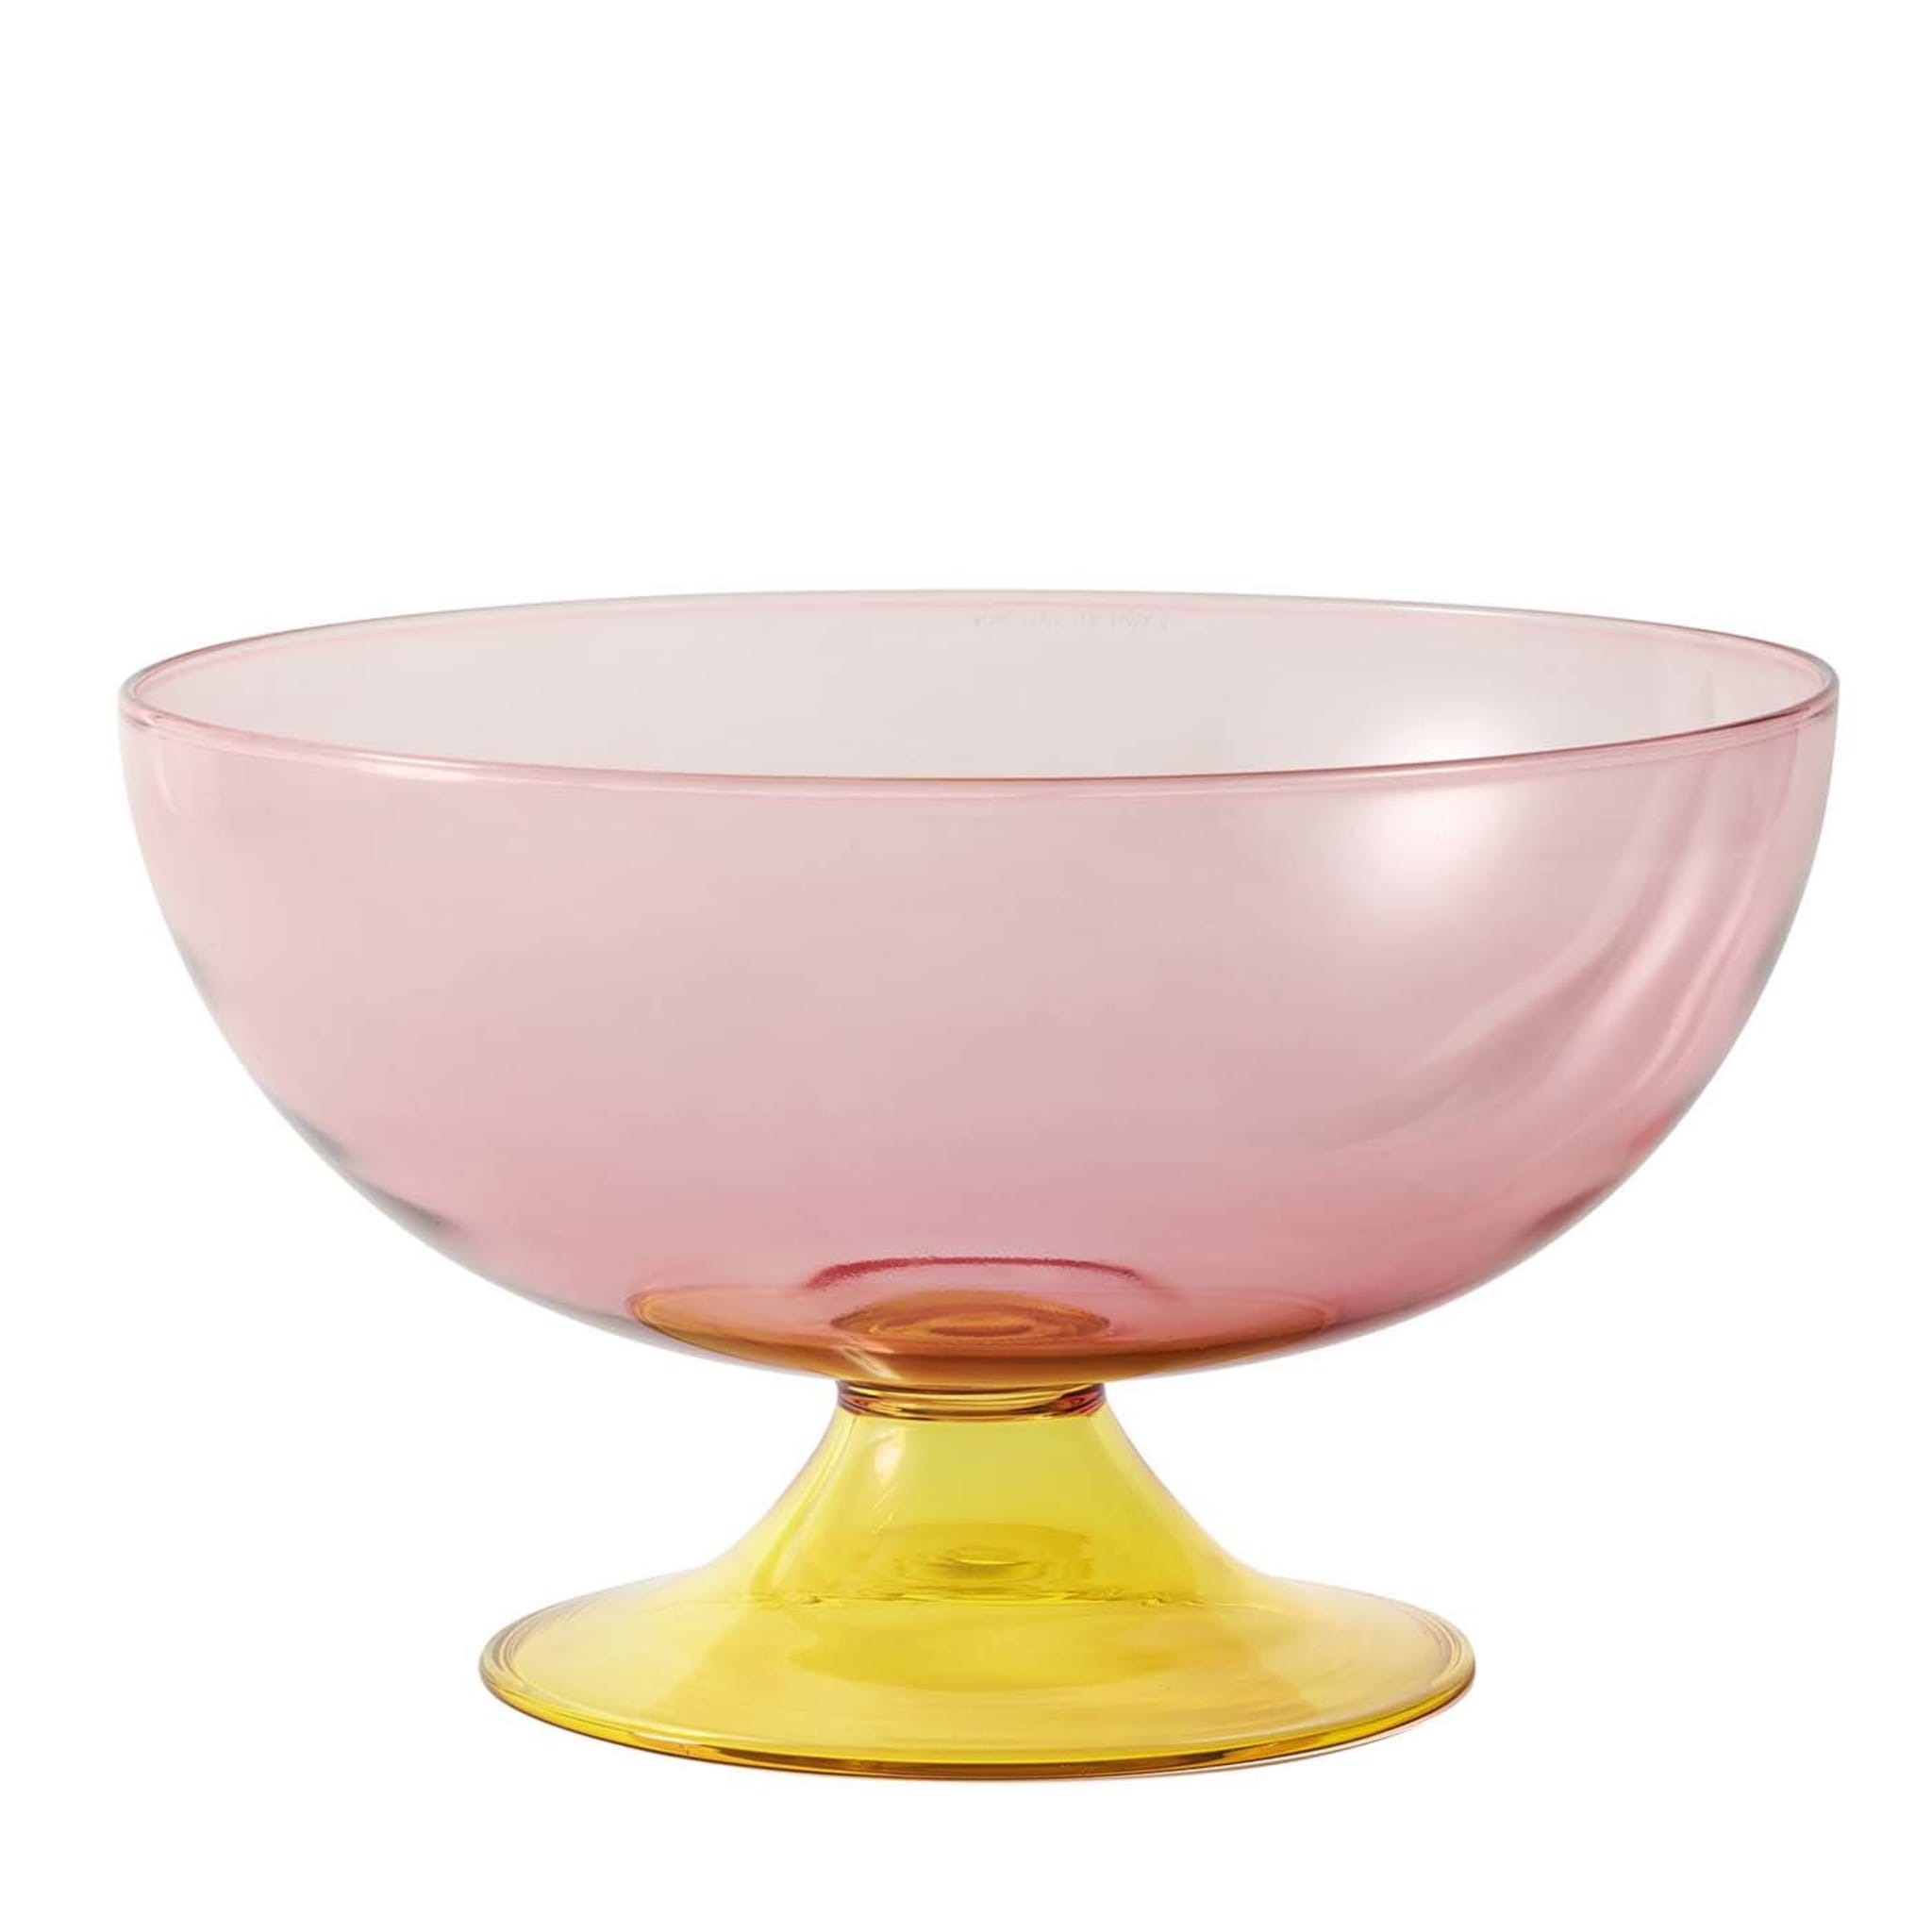 Grand gobelet en verre jaune et rose Cuppone par Aldo Cibic - Vue principale